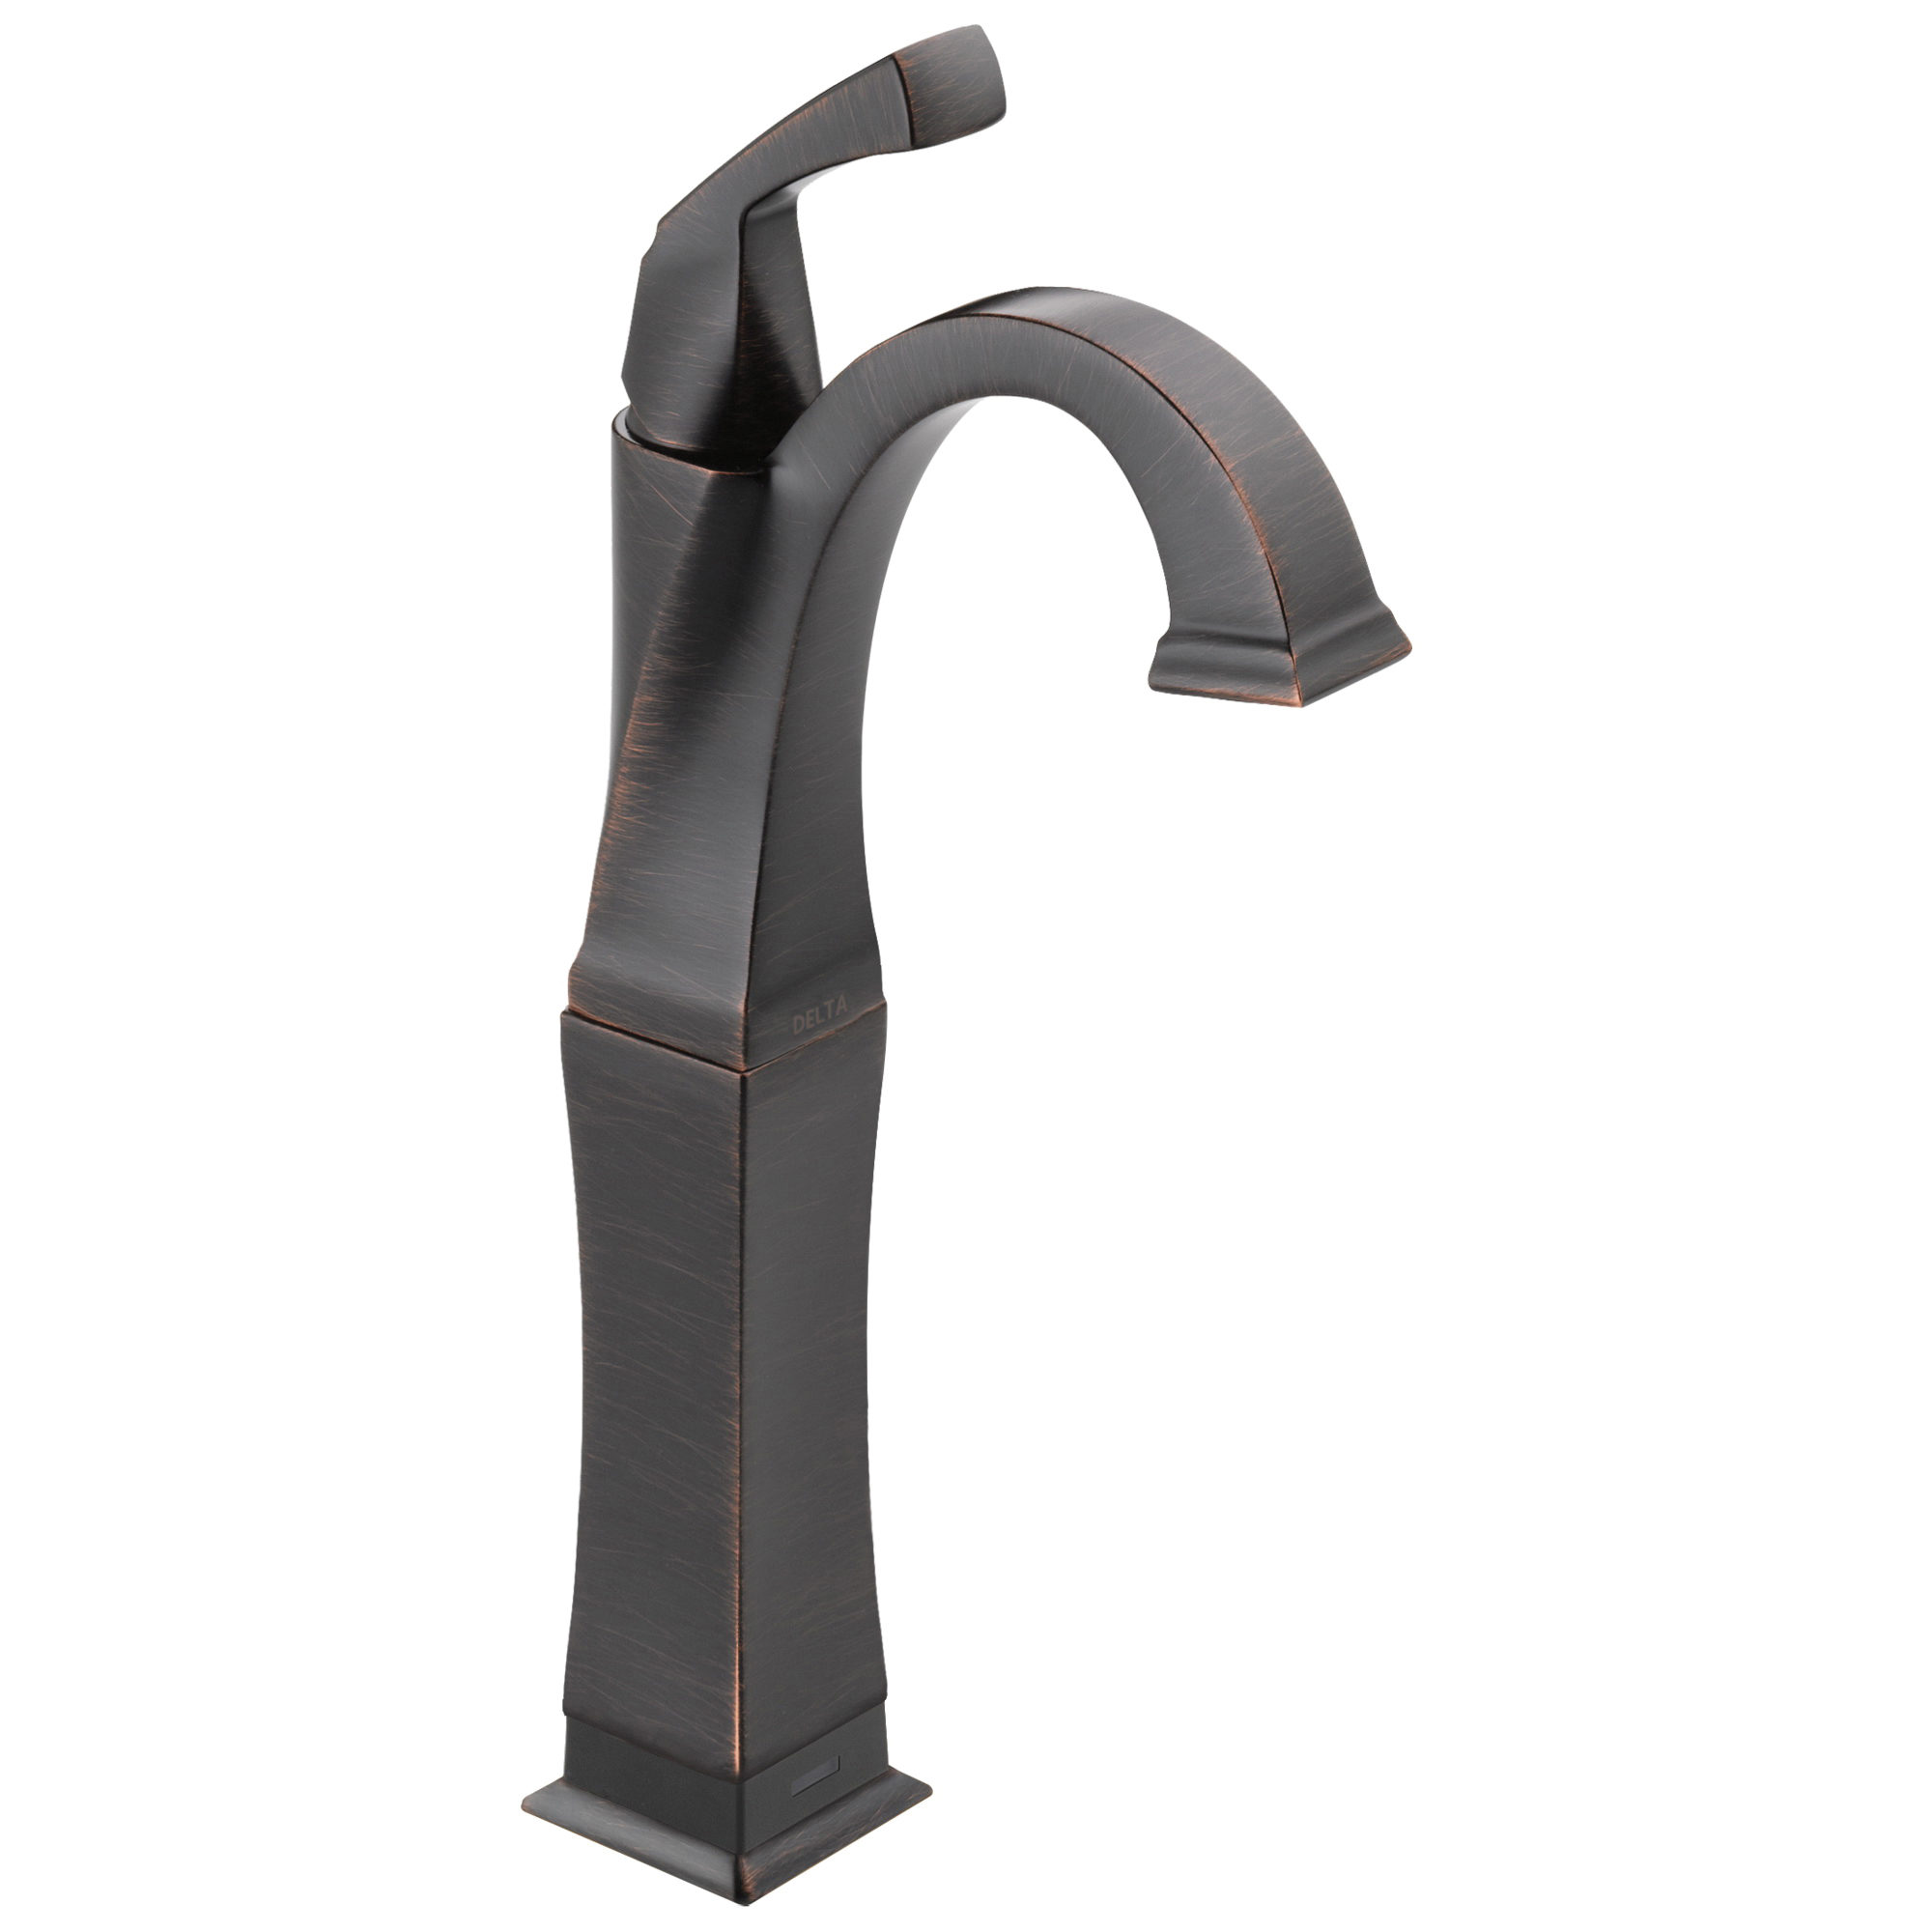 DELTA® 751T-RB-DST Vessel Lavatory Faucet, Dryden™, Commercial, 5-3/8 in Spout, 9-1/8 in H Spout, Brilliance® Venetian Bronze, 1 Handles, Domestic